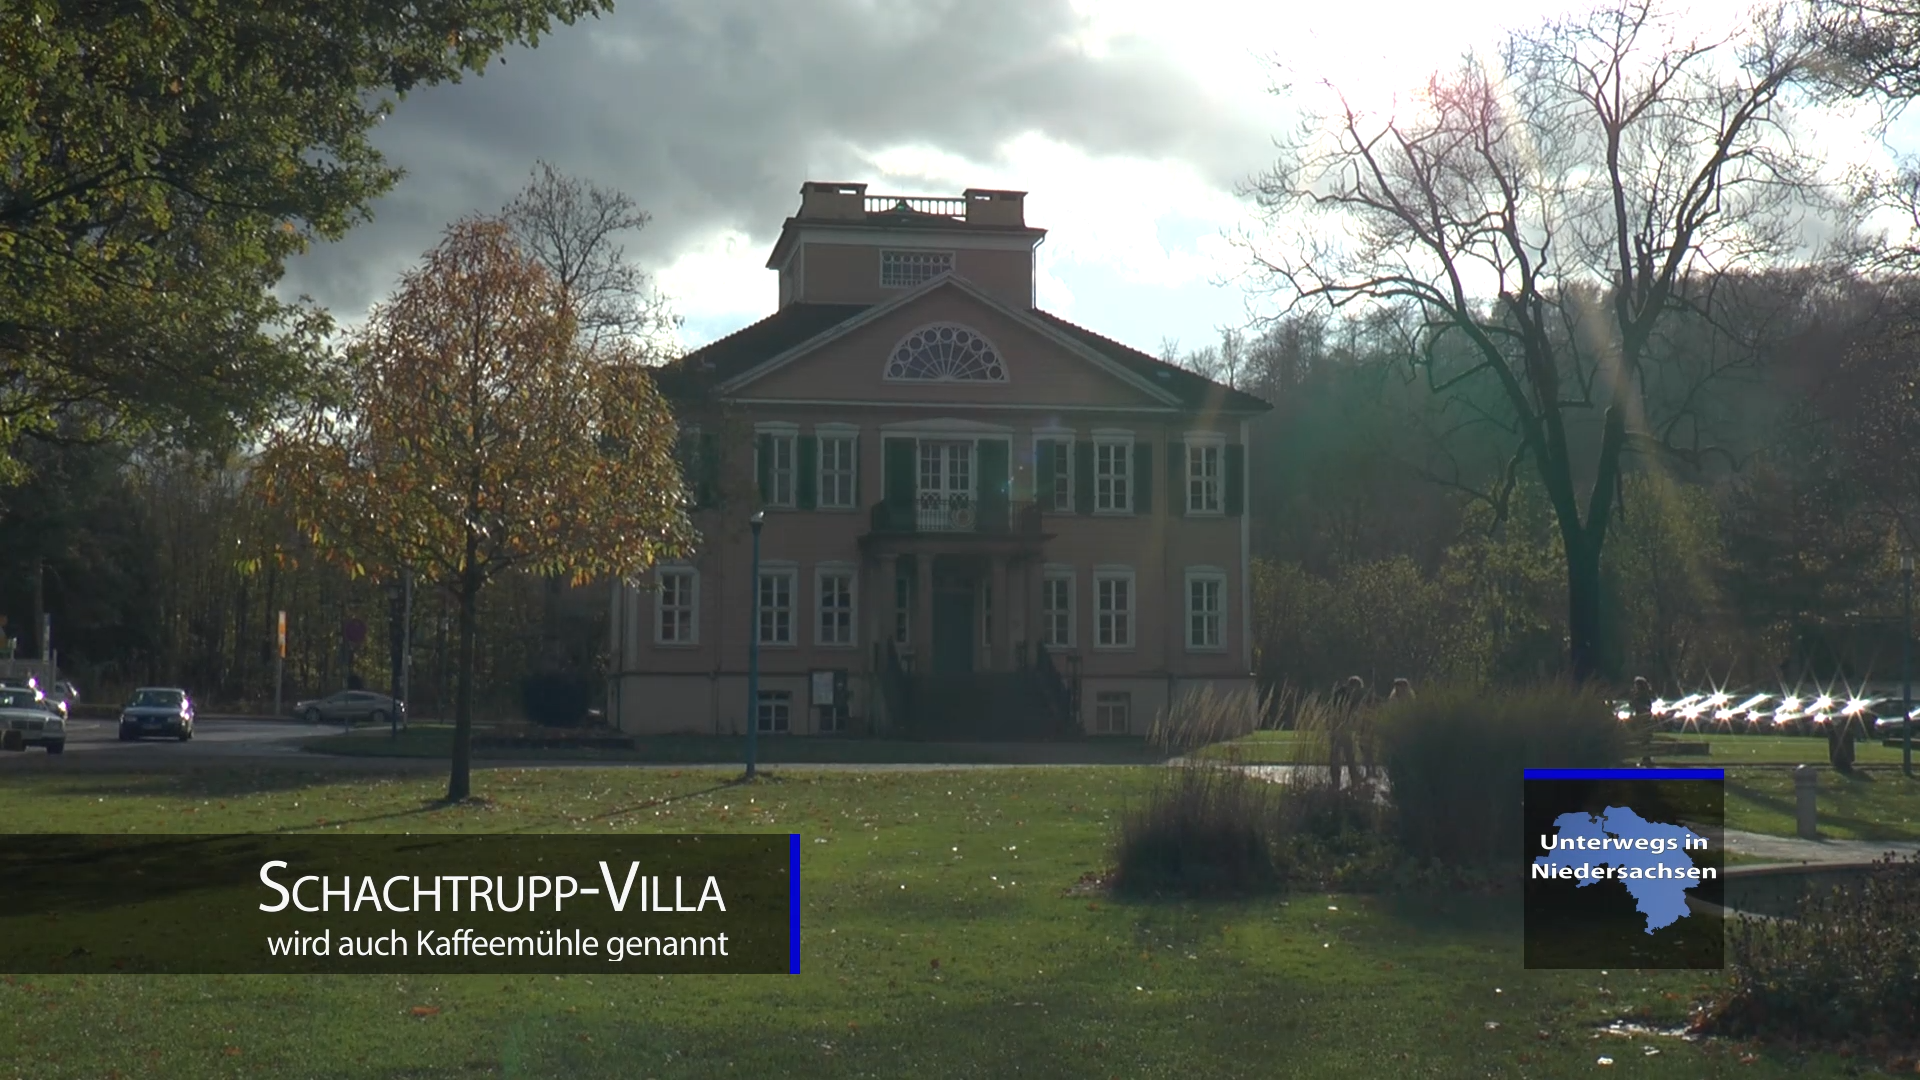 Schachtrupp-Villa